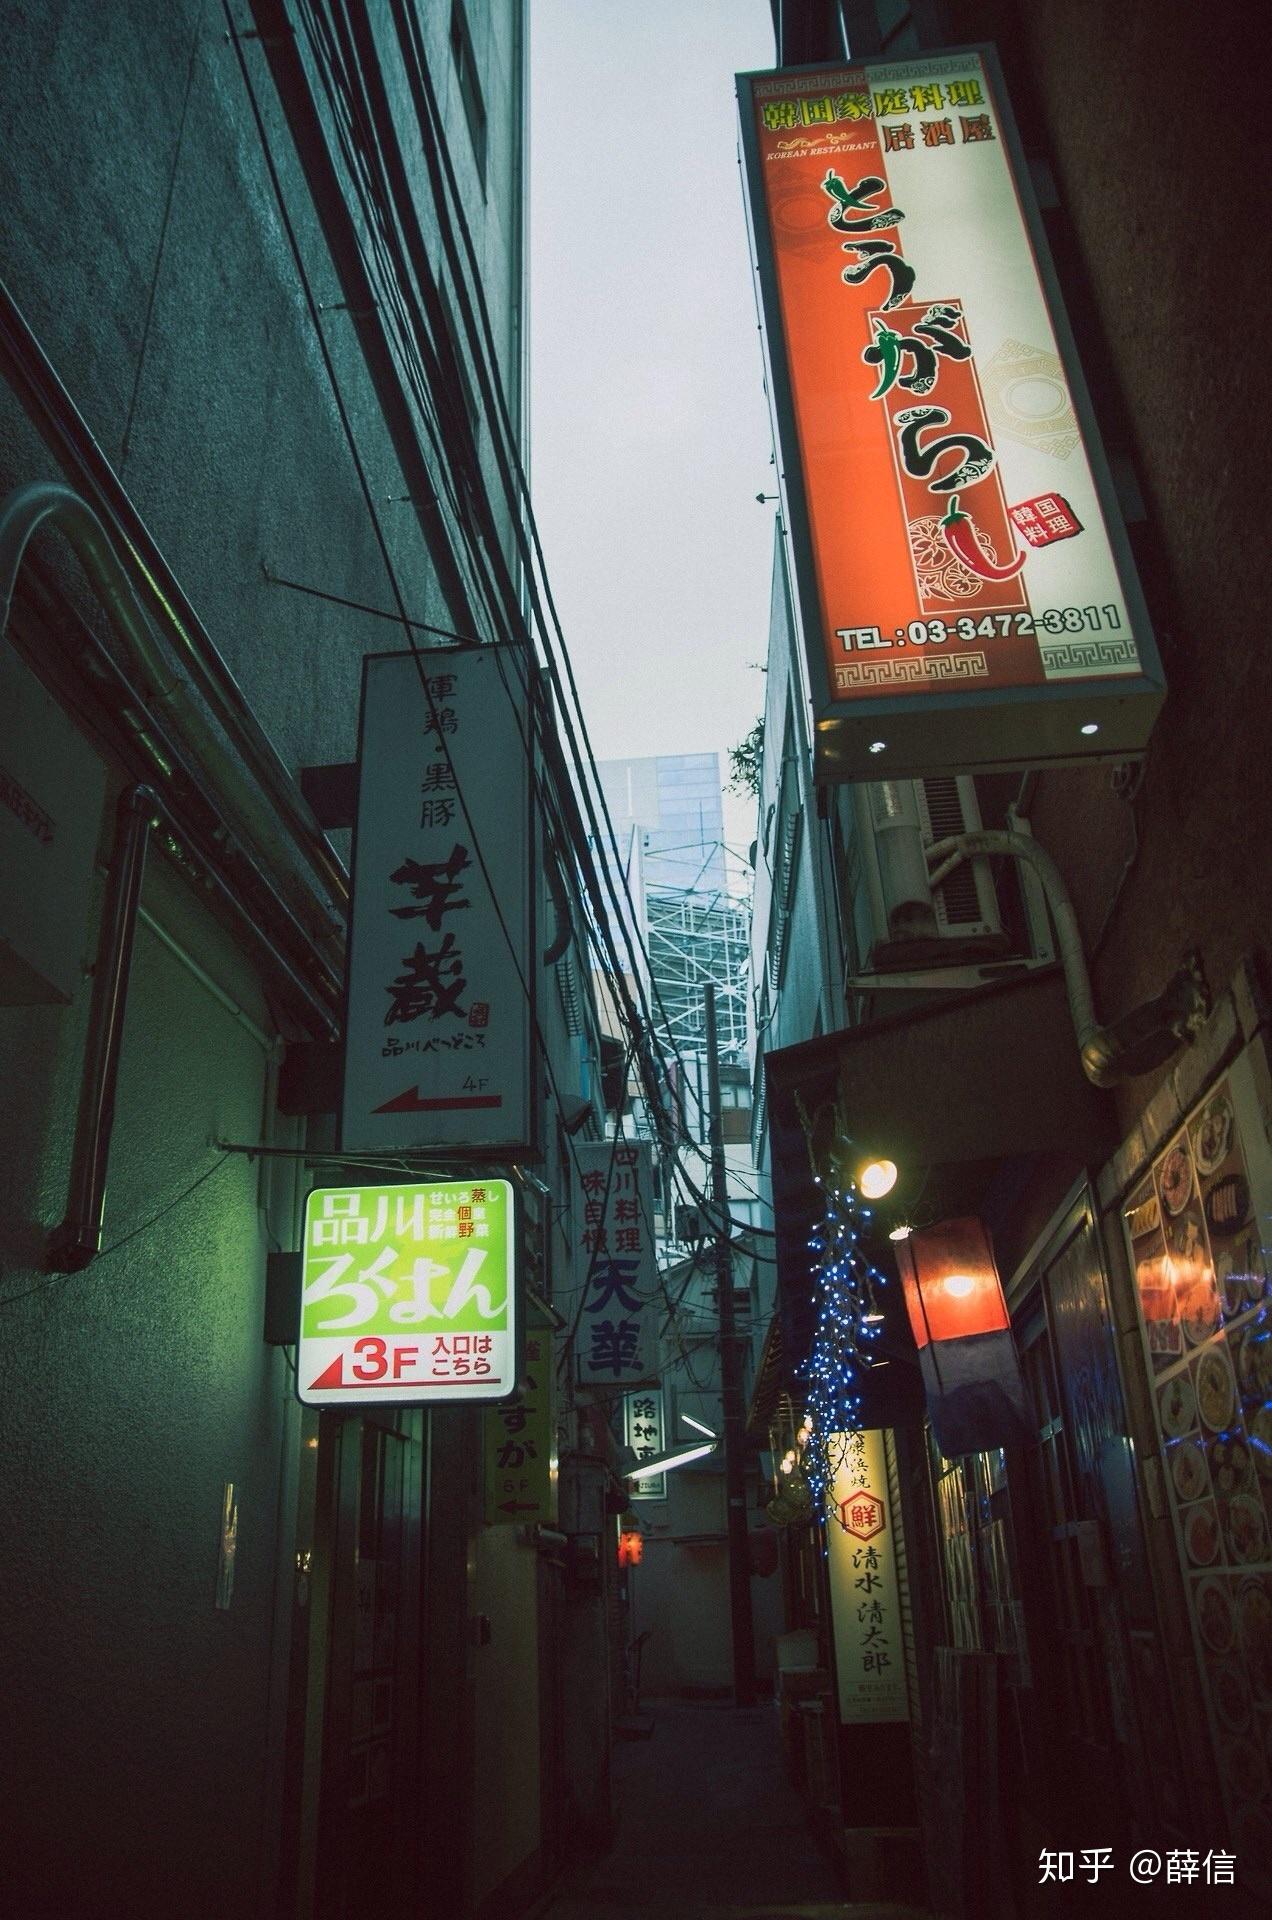 有没有像这种日本街头风的壁纸? 